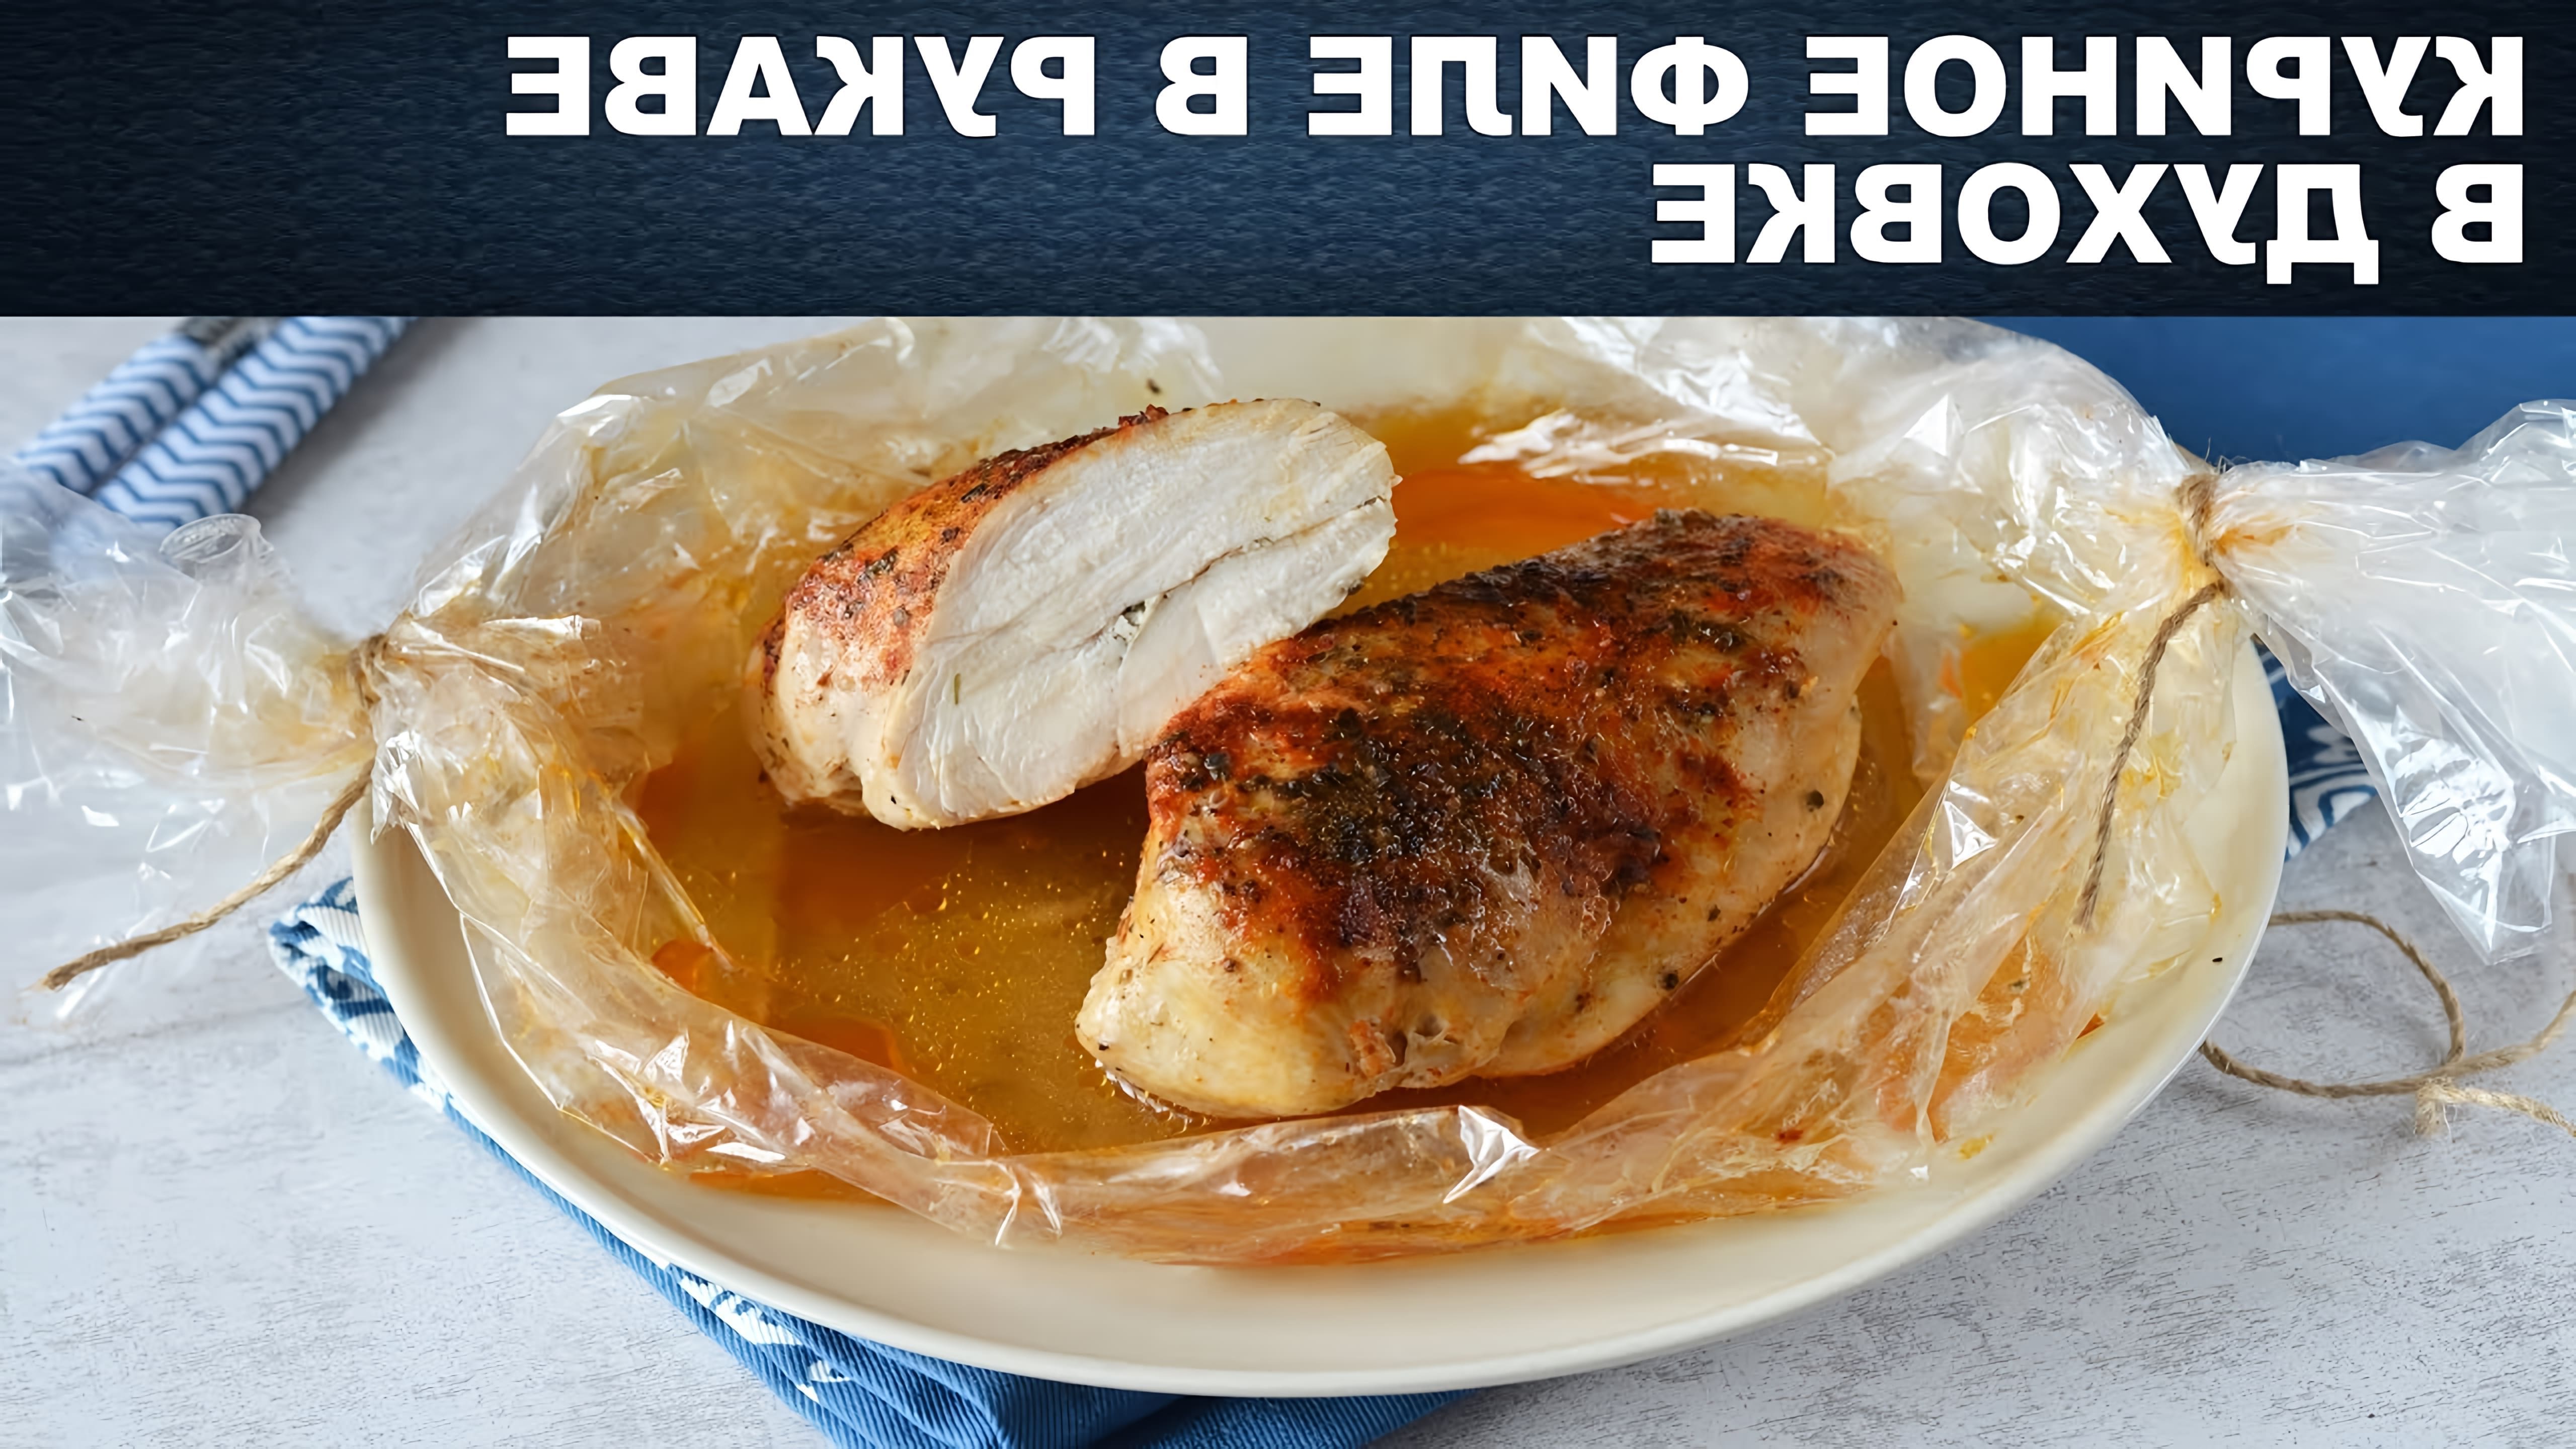 ПростойРецепт #1000menu Как приготовить куриное филе или куриные грудки в рукаве в духовке? Смотрите видео рецепт... 